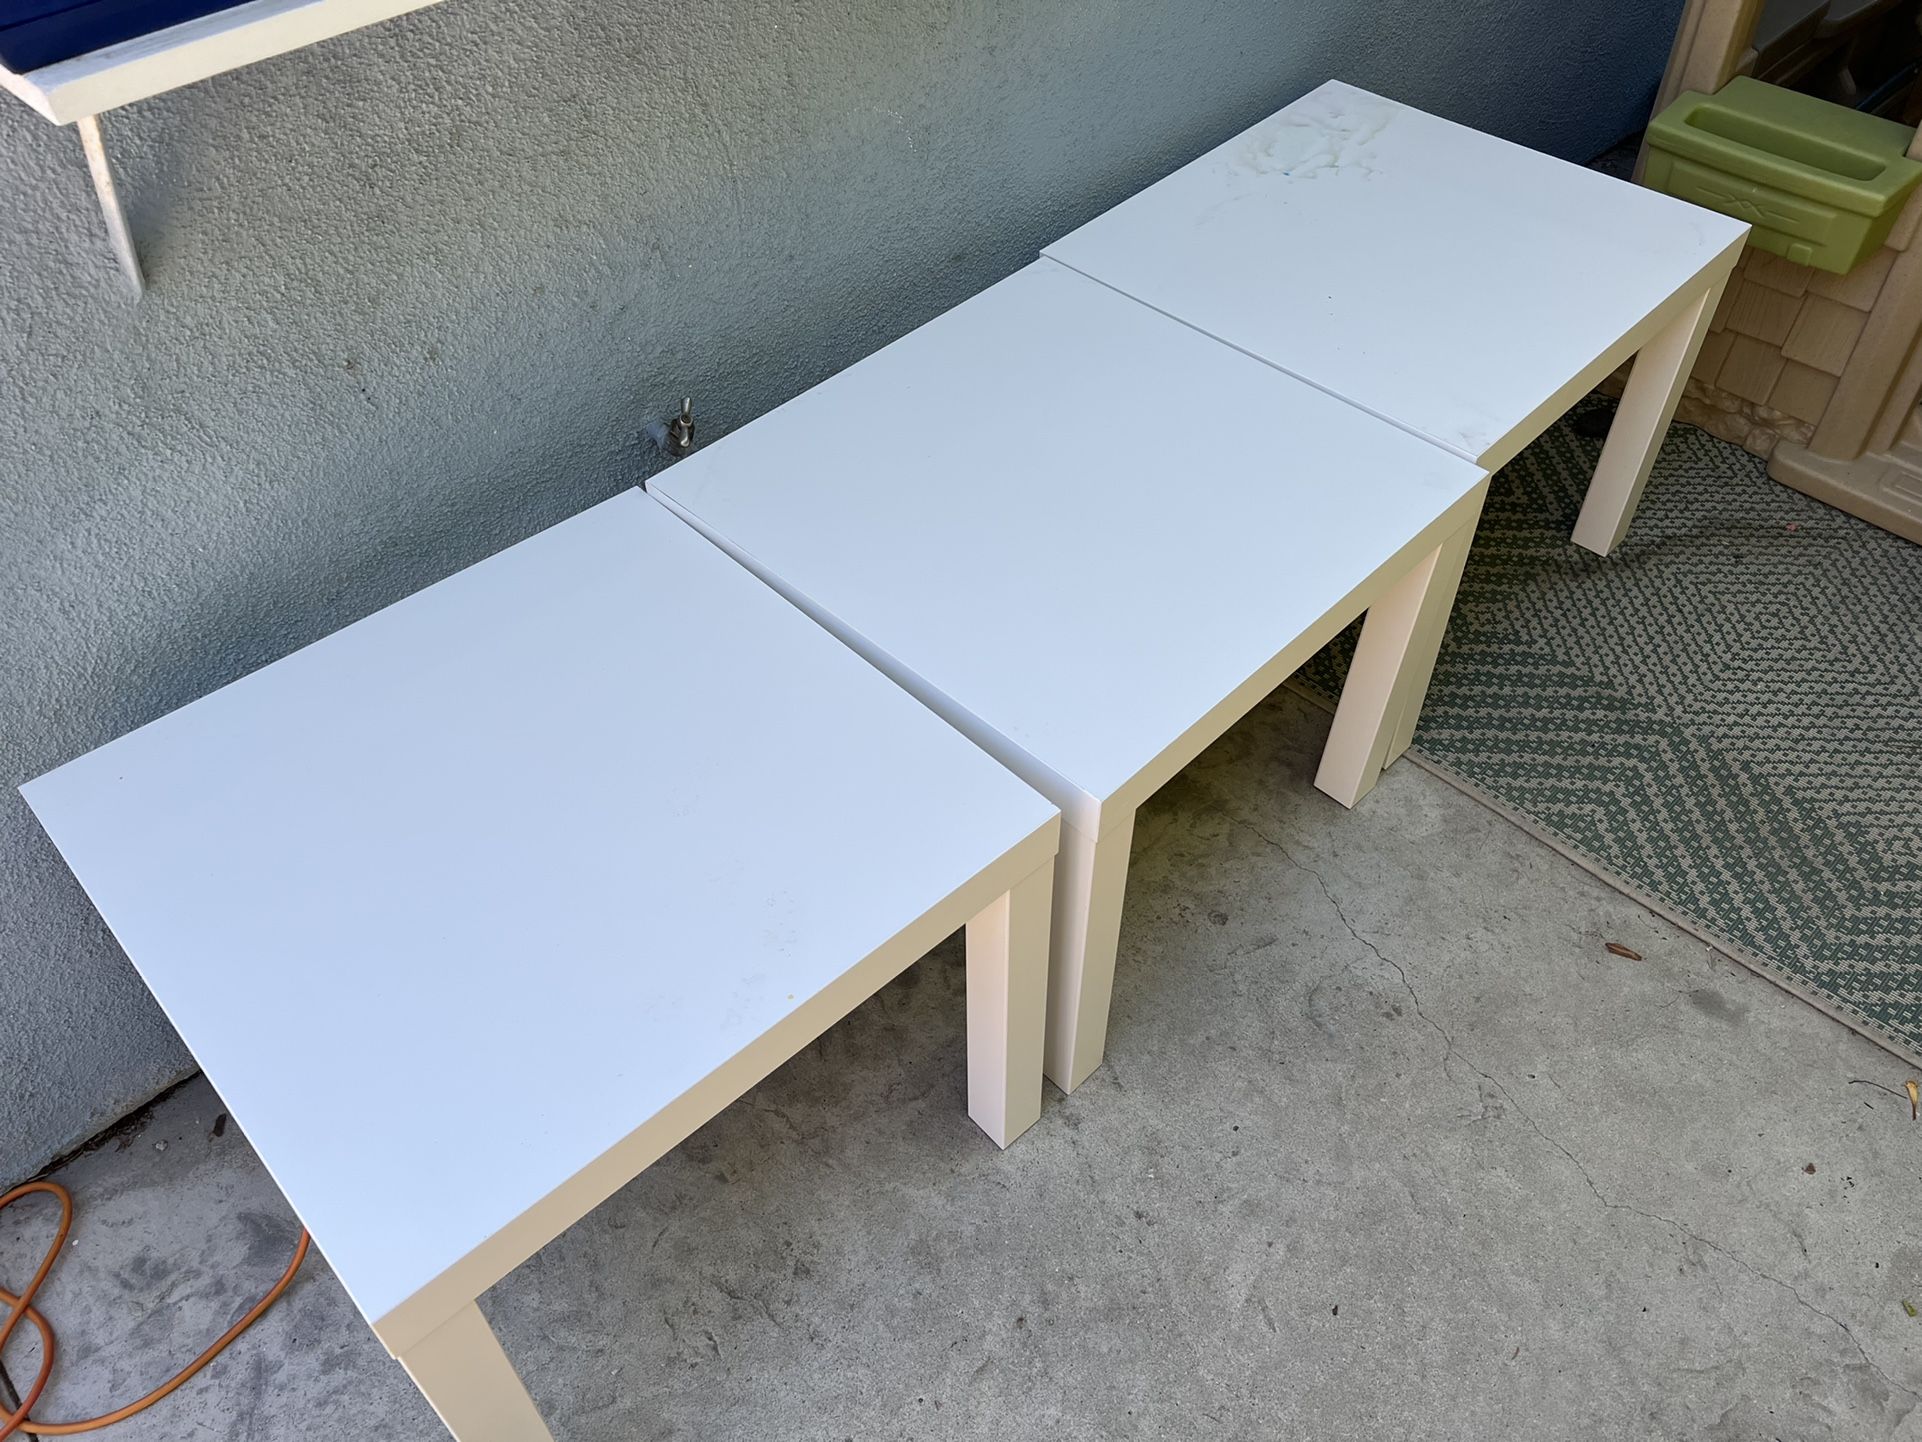 3 IKEA Side Tables